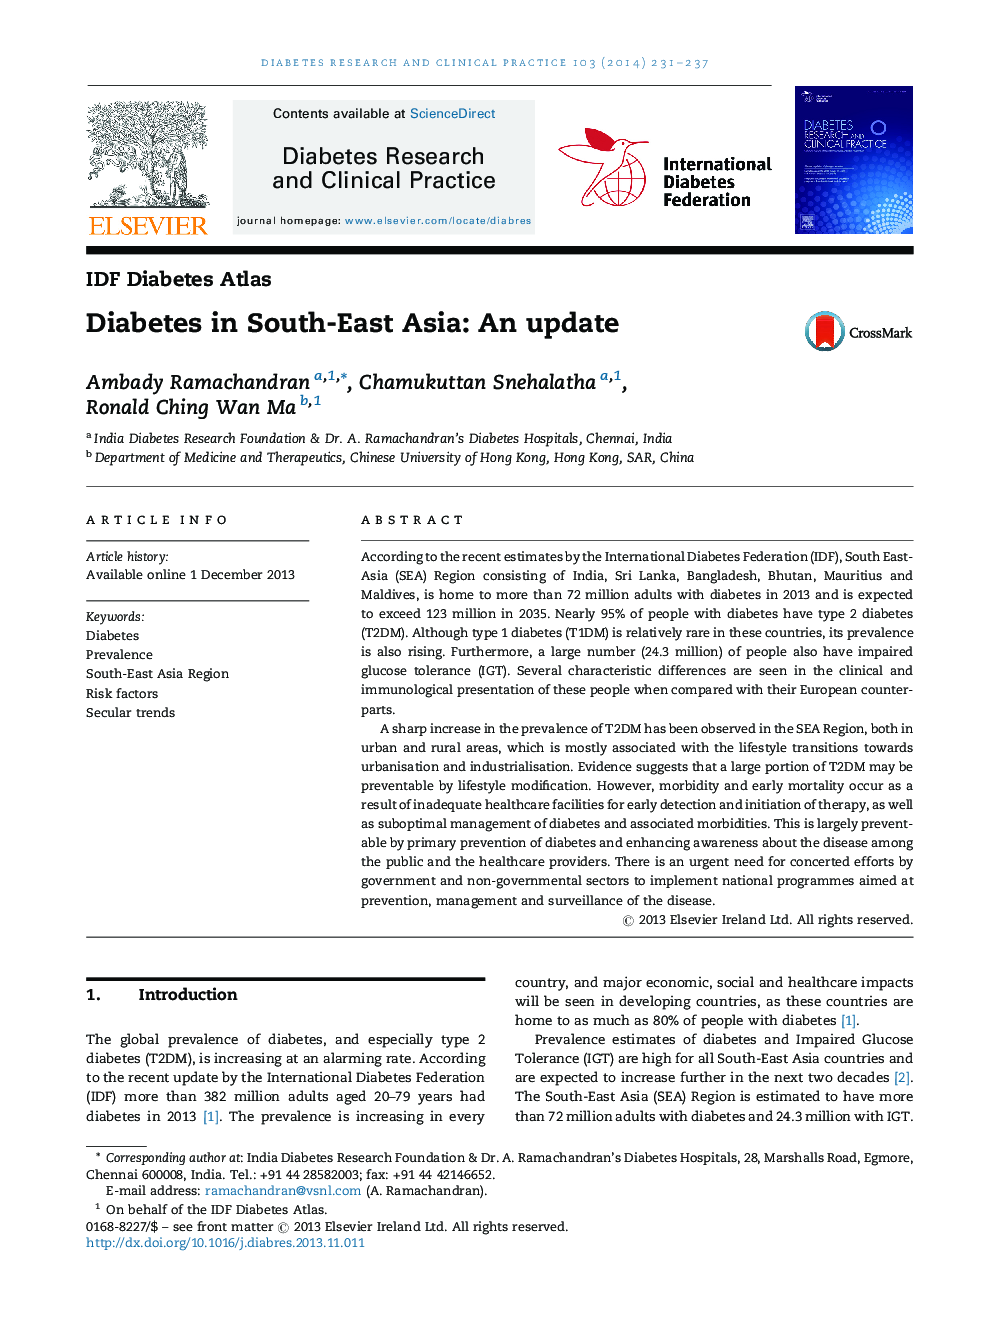 دیابت در جنوب شرق آسیا: به روز رسانی 